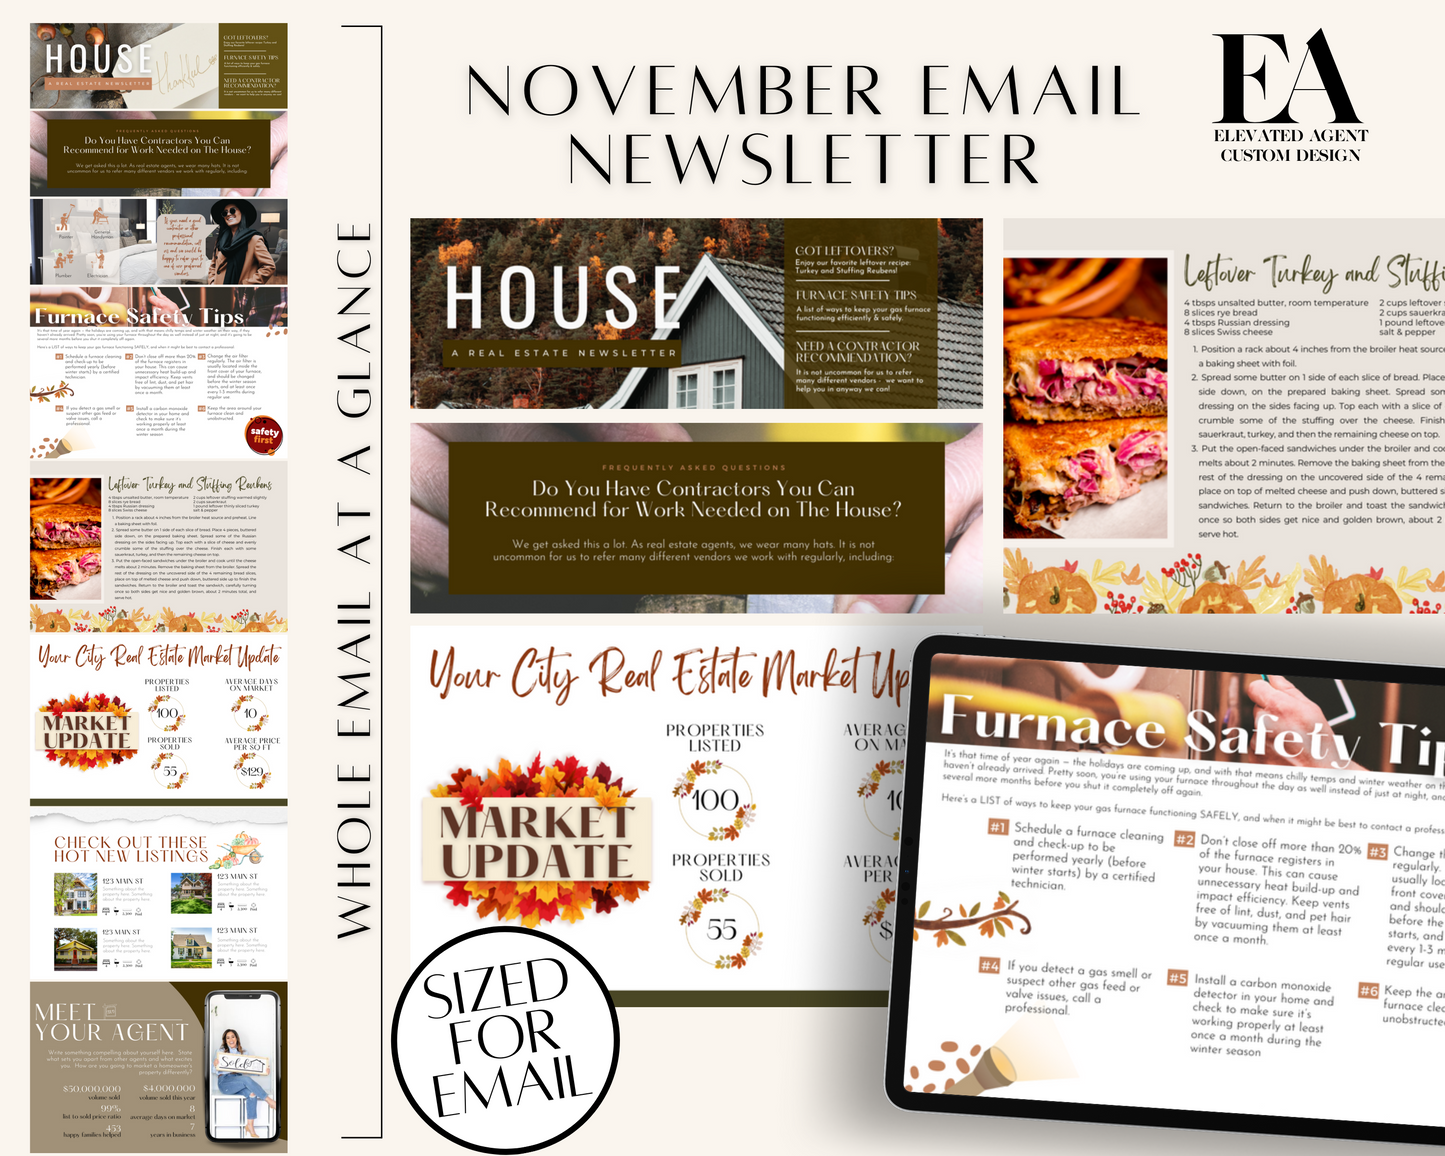 November Email Newsletter